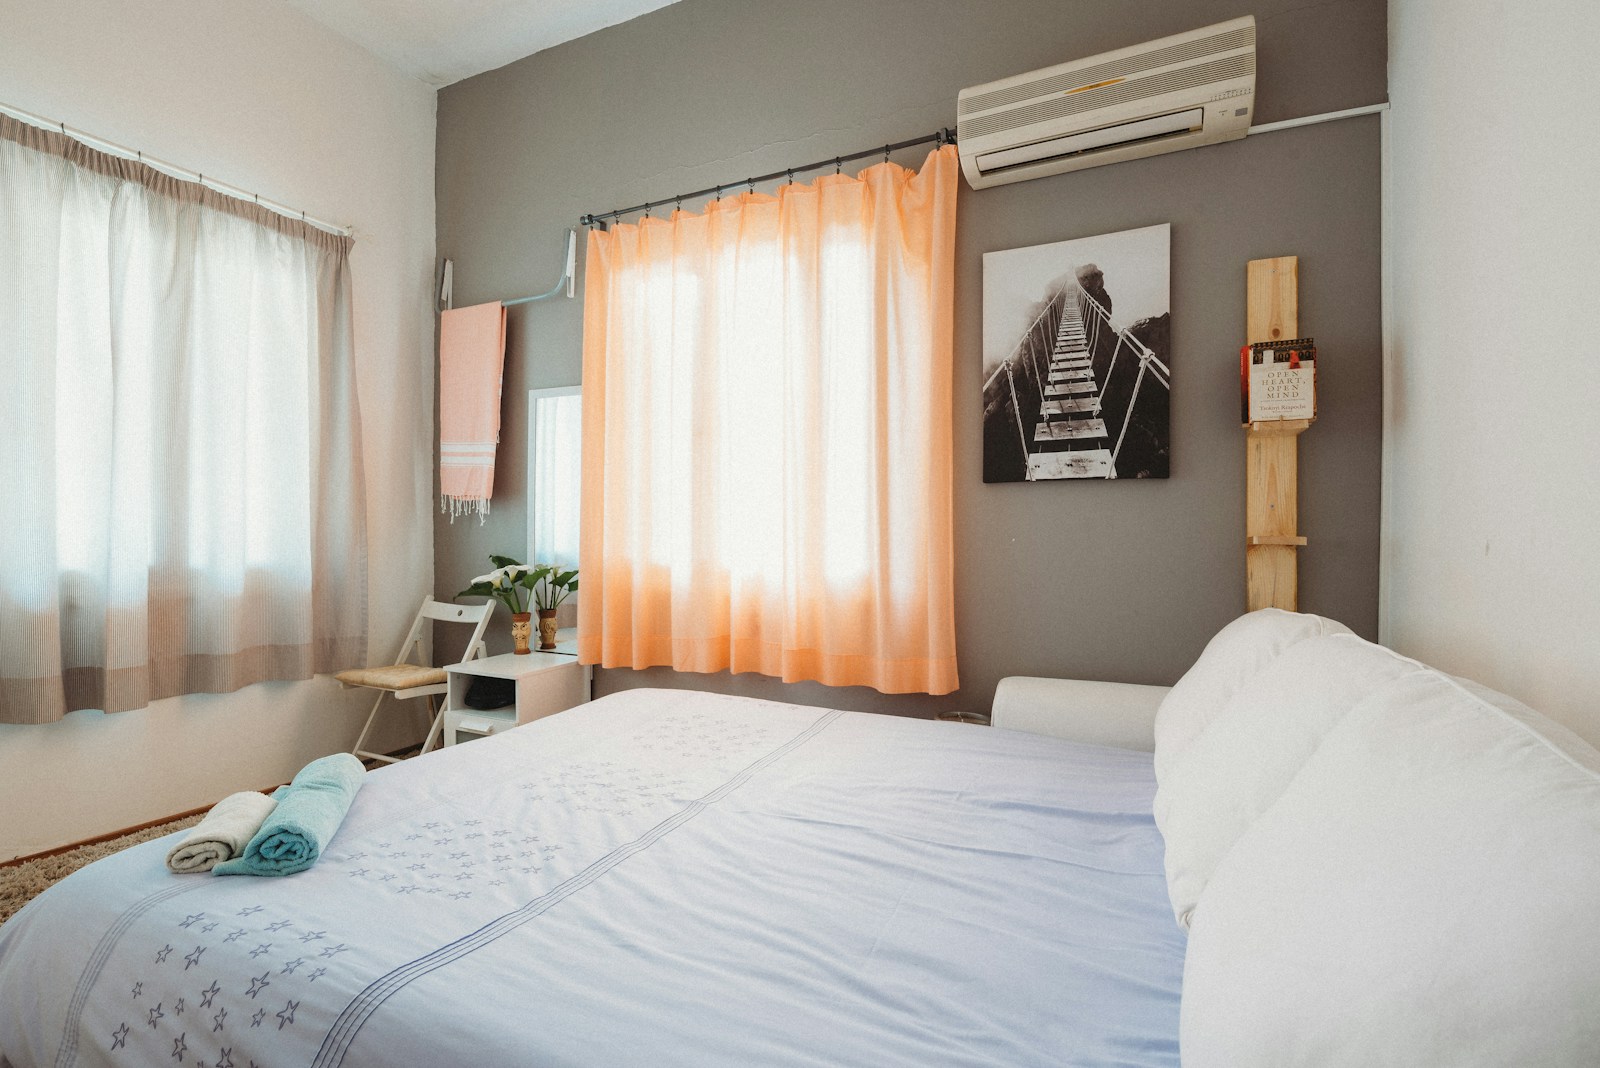 creer une conciergerie Airbnb dans une zone touristique